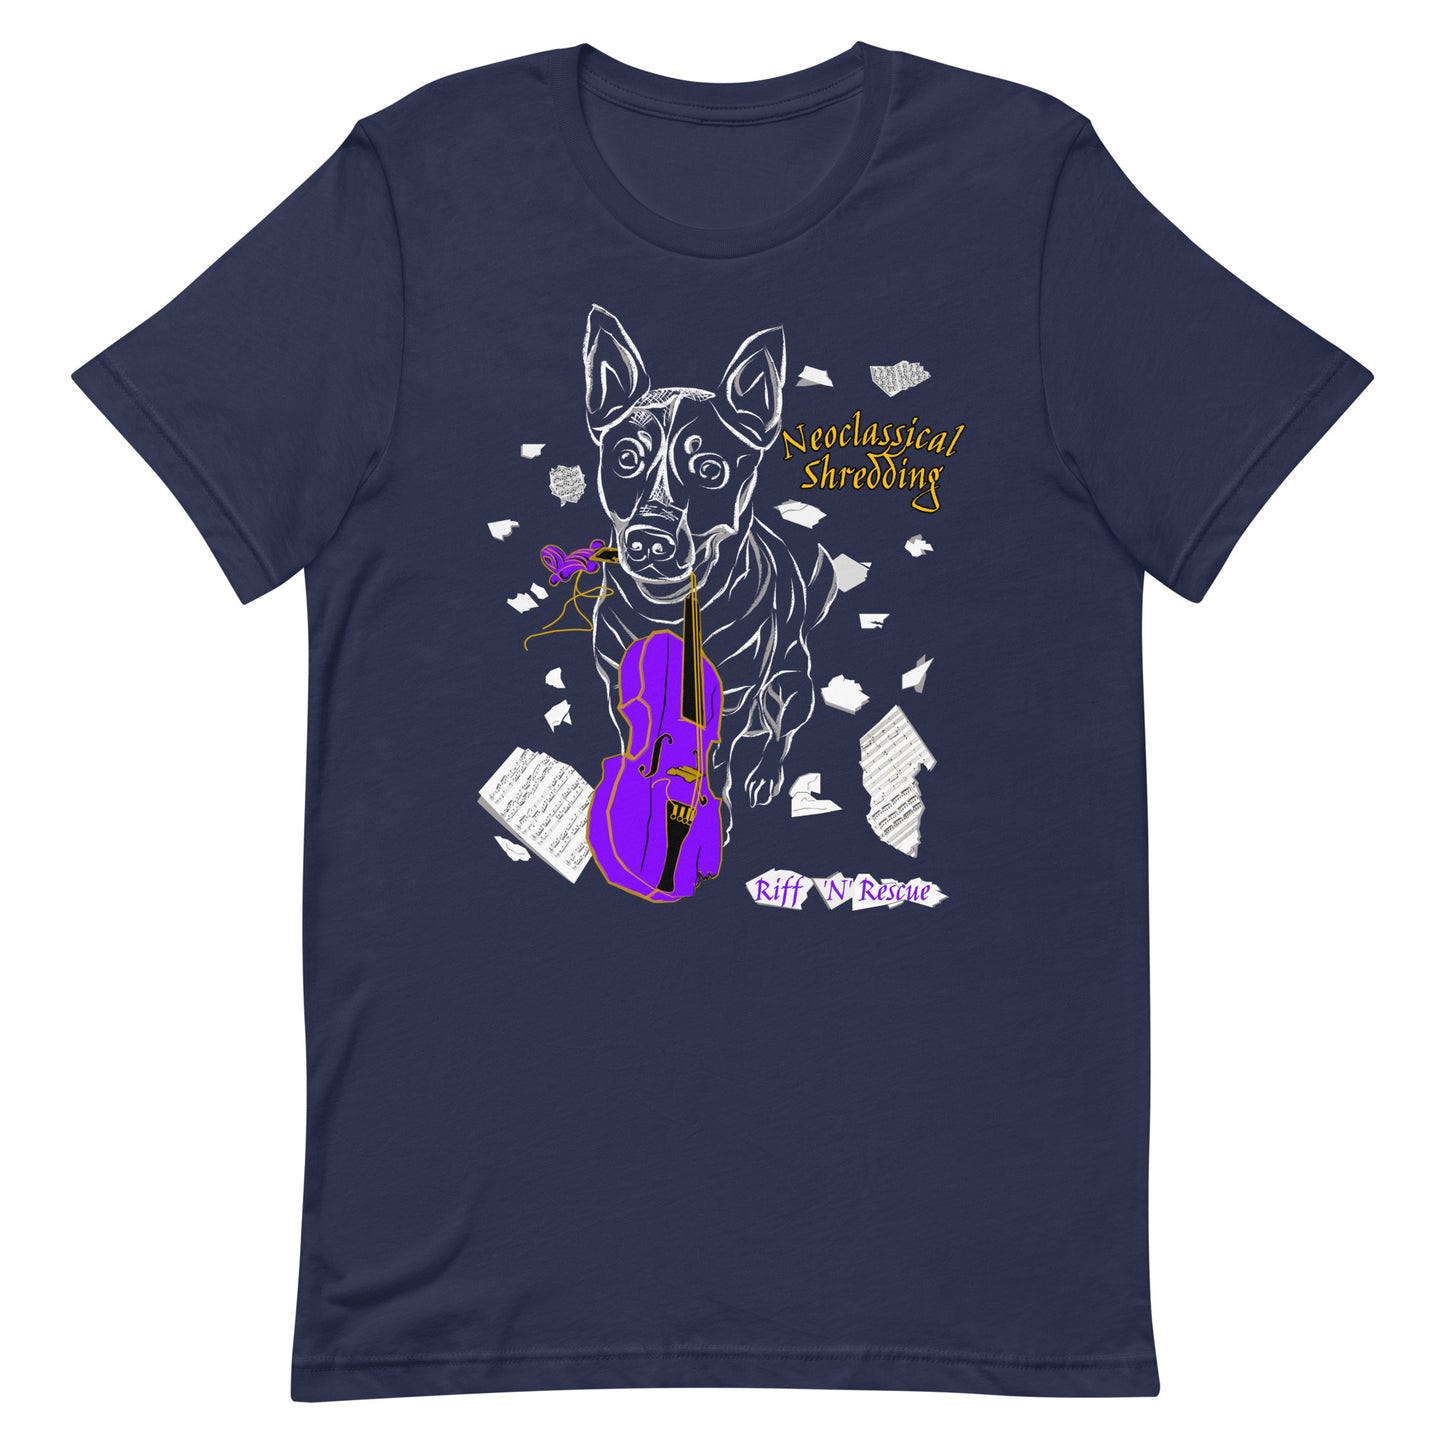 Neoclassical Shredding Unisex t-shirt (Blinky)